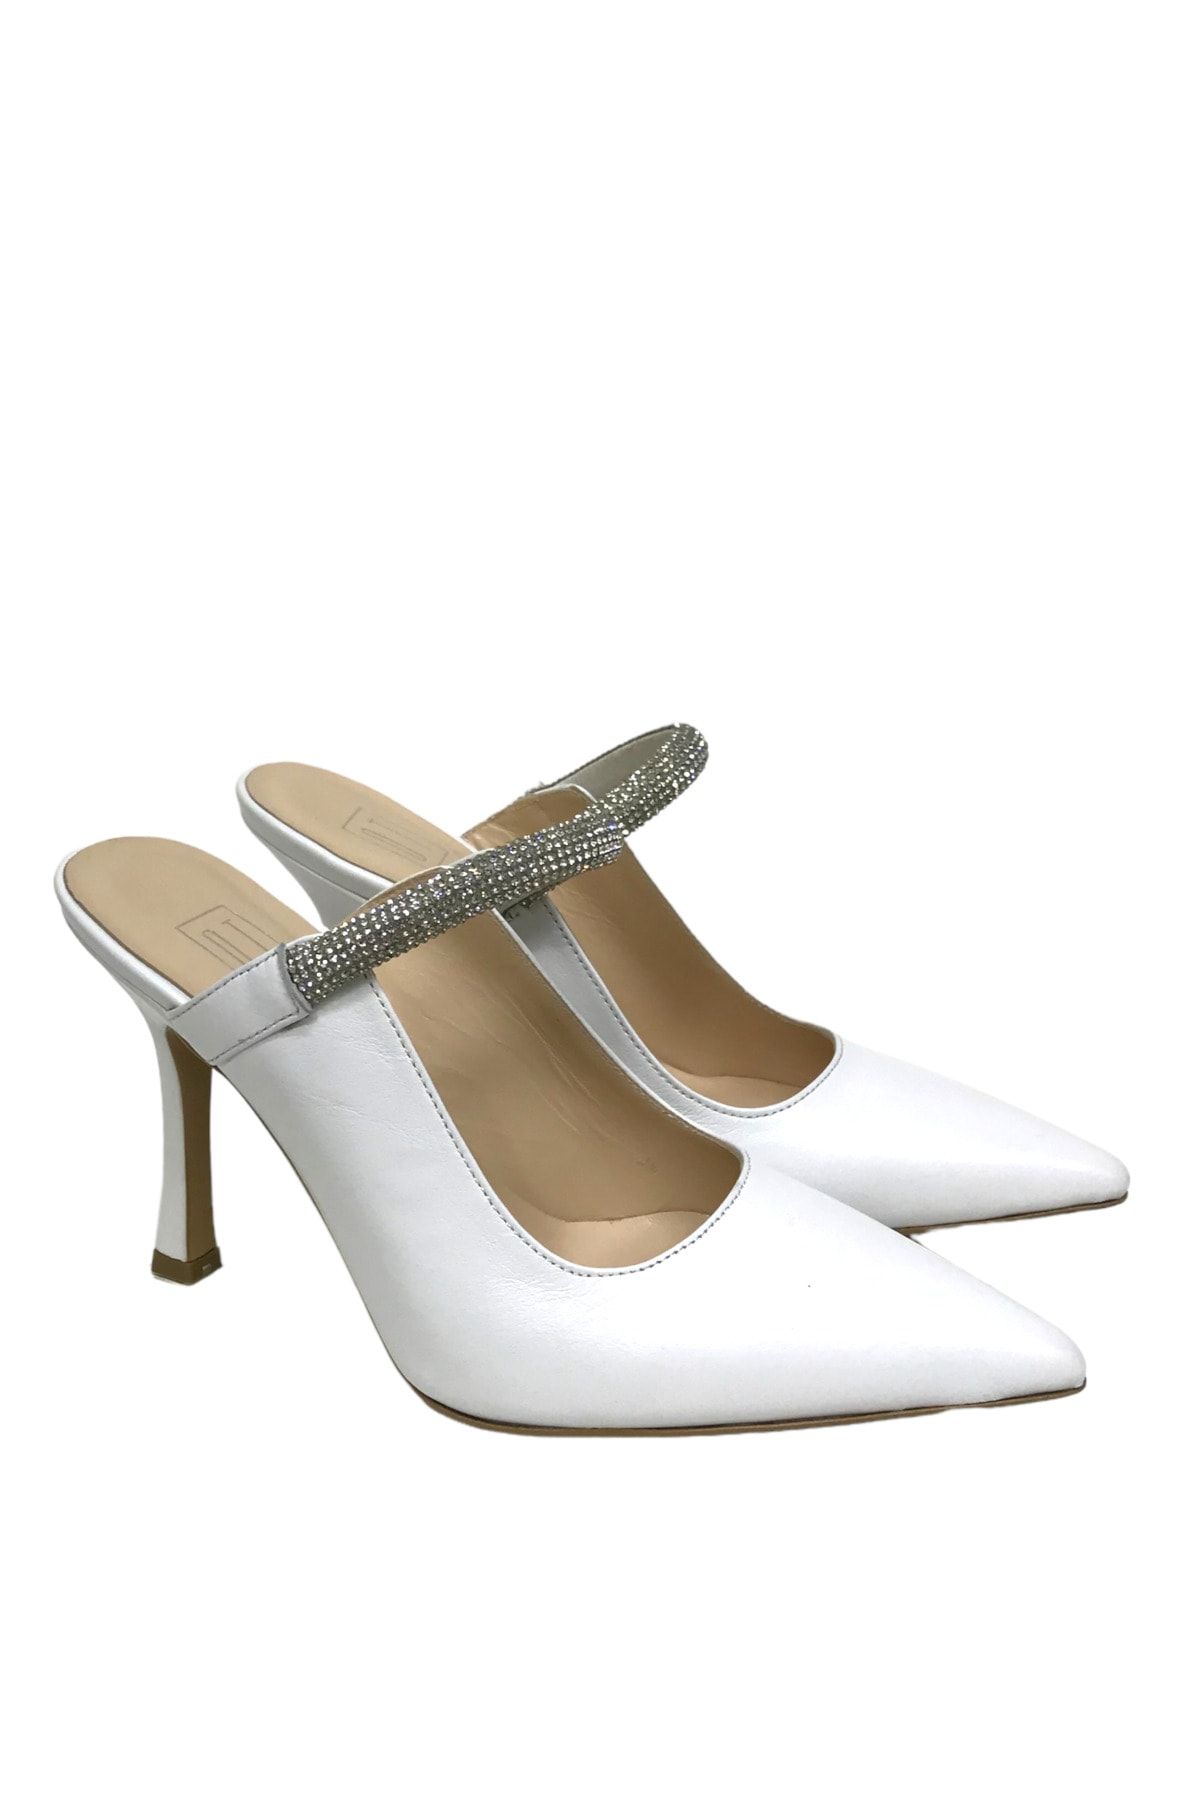 Stella Pendenza Hakiki Deri 9 Cm Stiletto Tarzı Taşlı Topuklu Ayakkabı